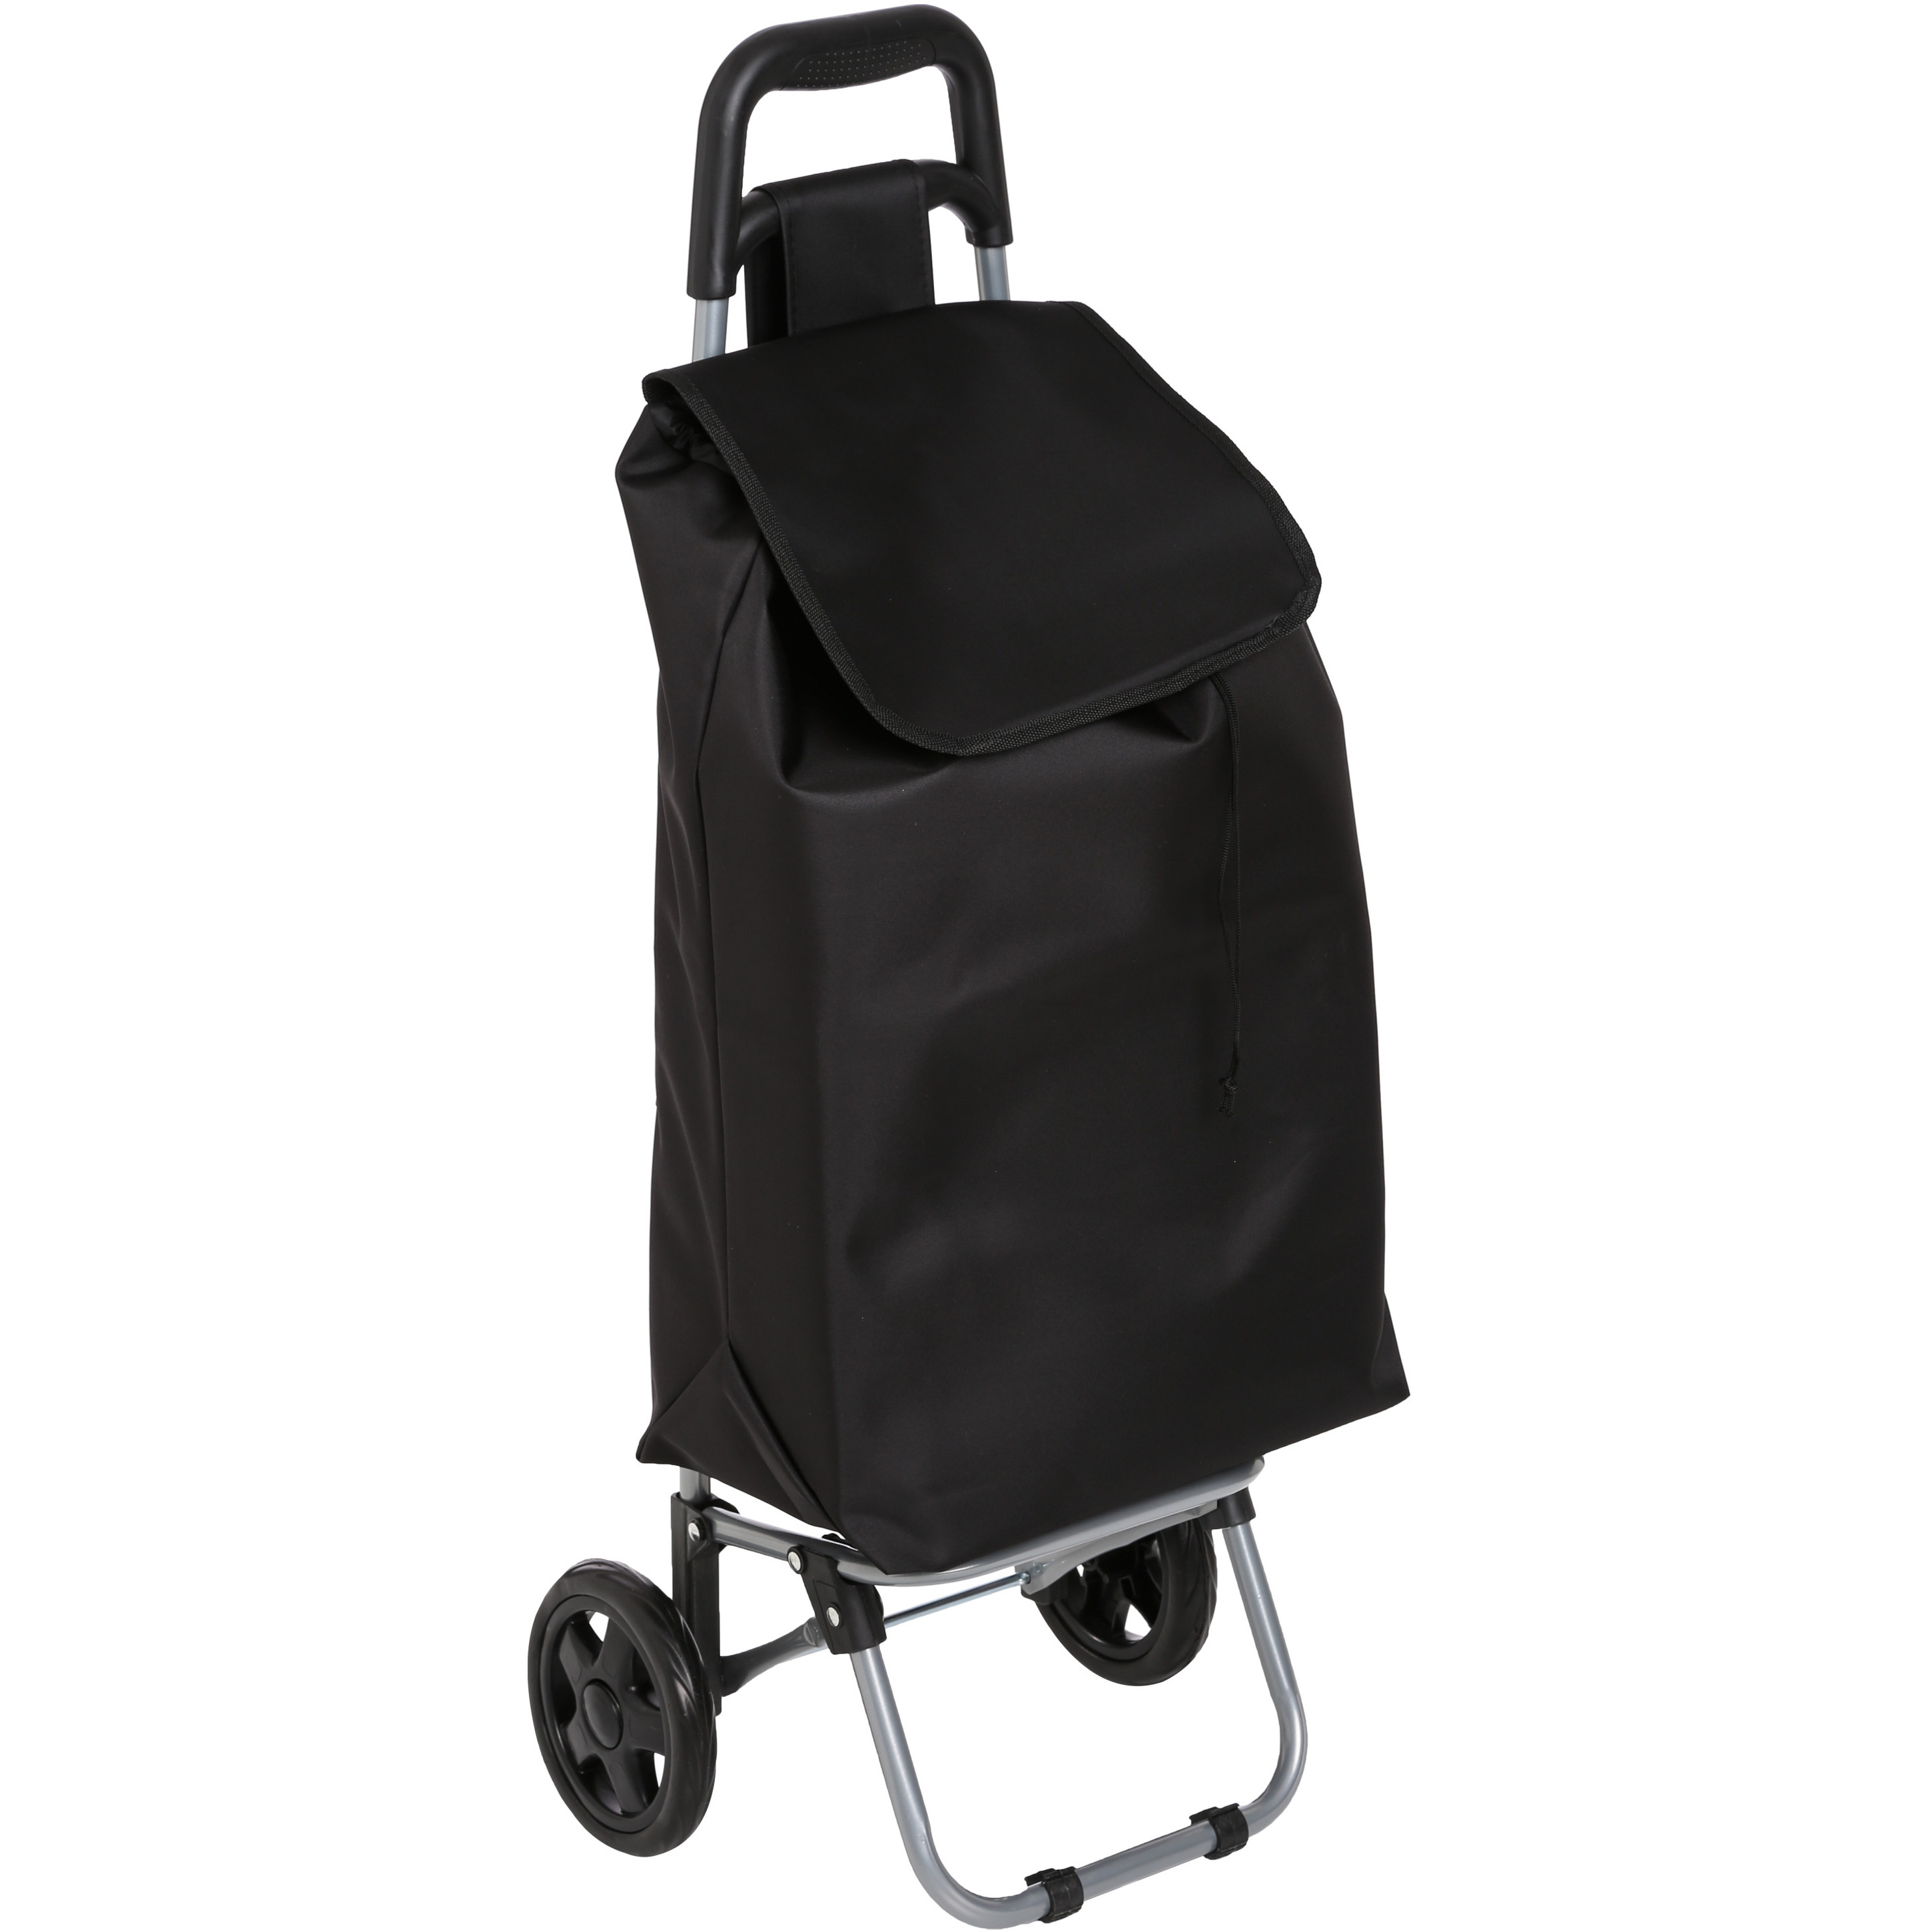 5five Boodschappen trolley tas - inhoud 30 liter - zwart - met wielen - 35 x 28 x 92 cm -